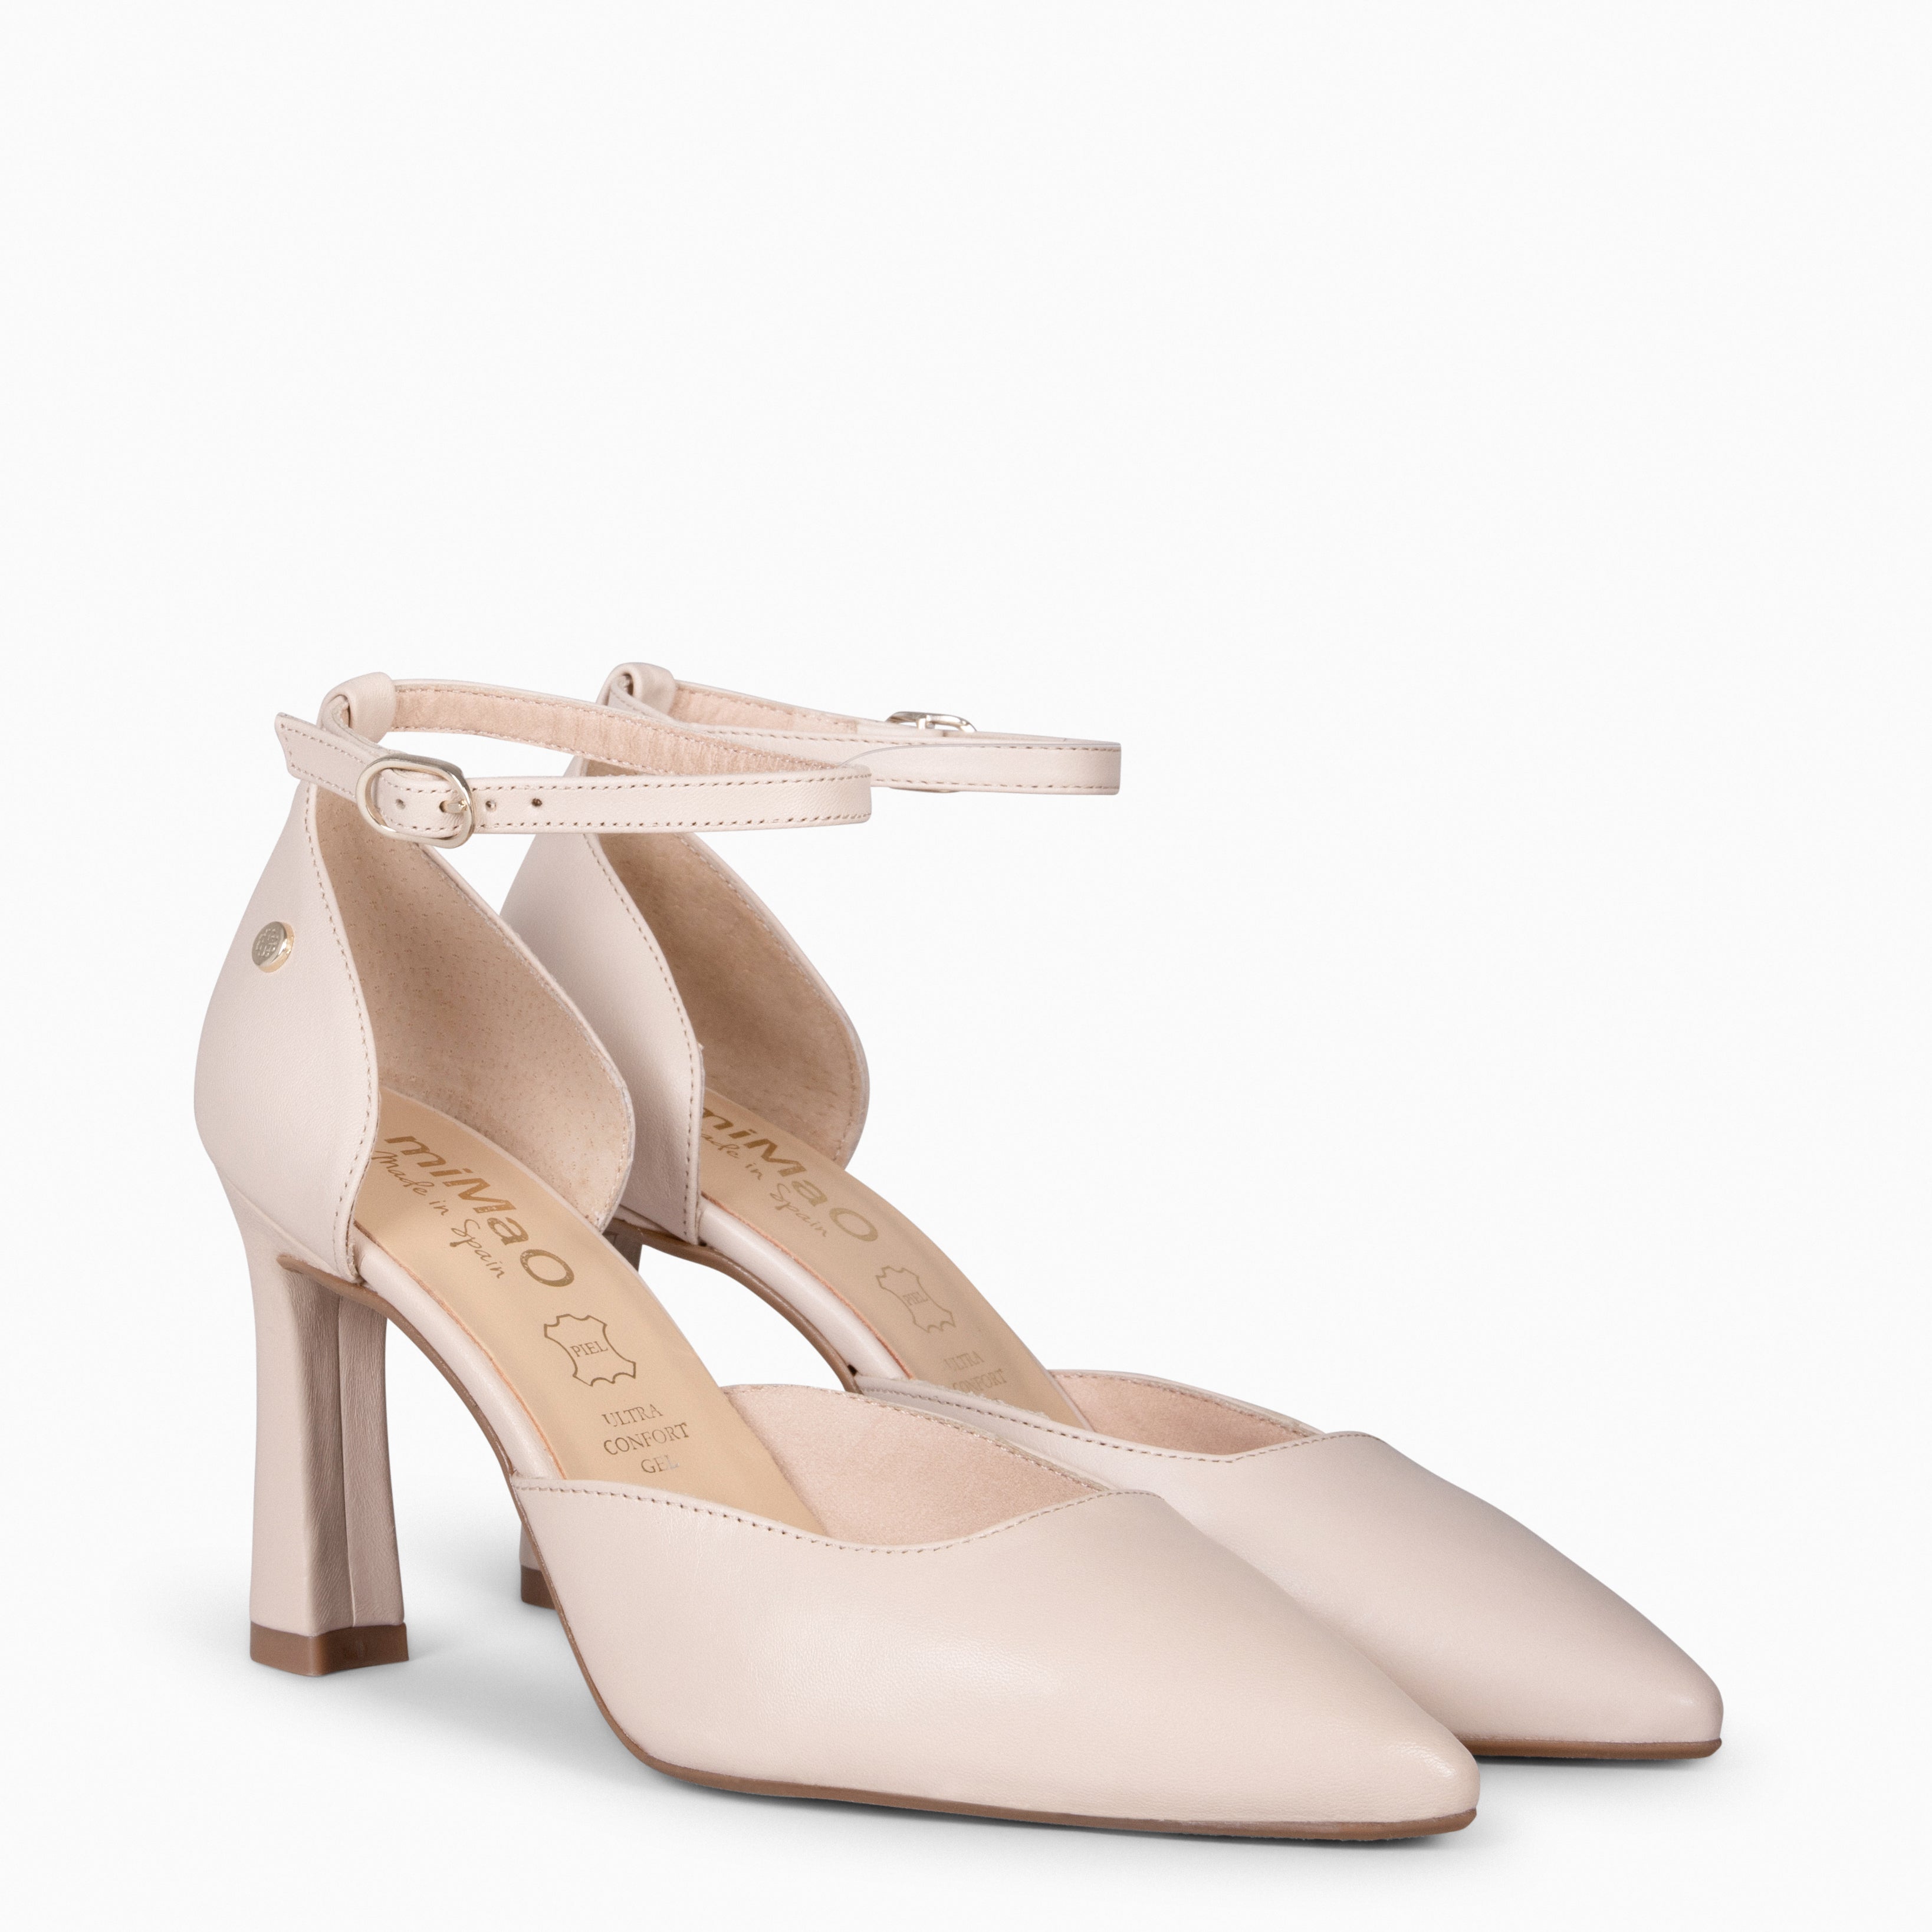 AINHOA – NUDE elegant heels